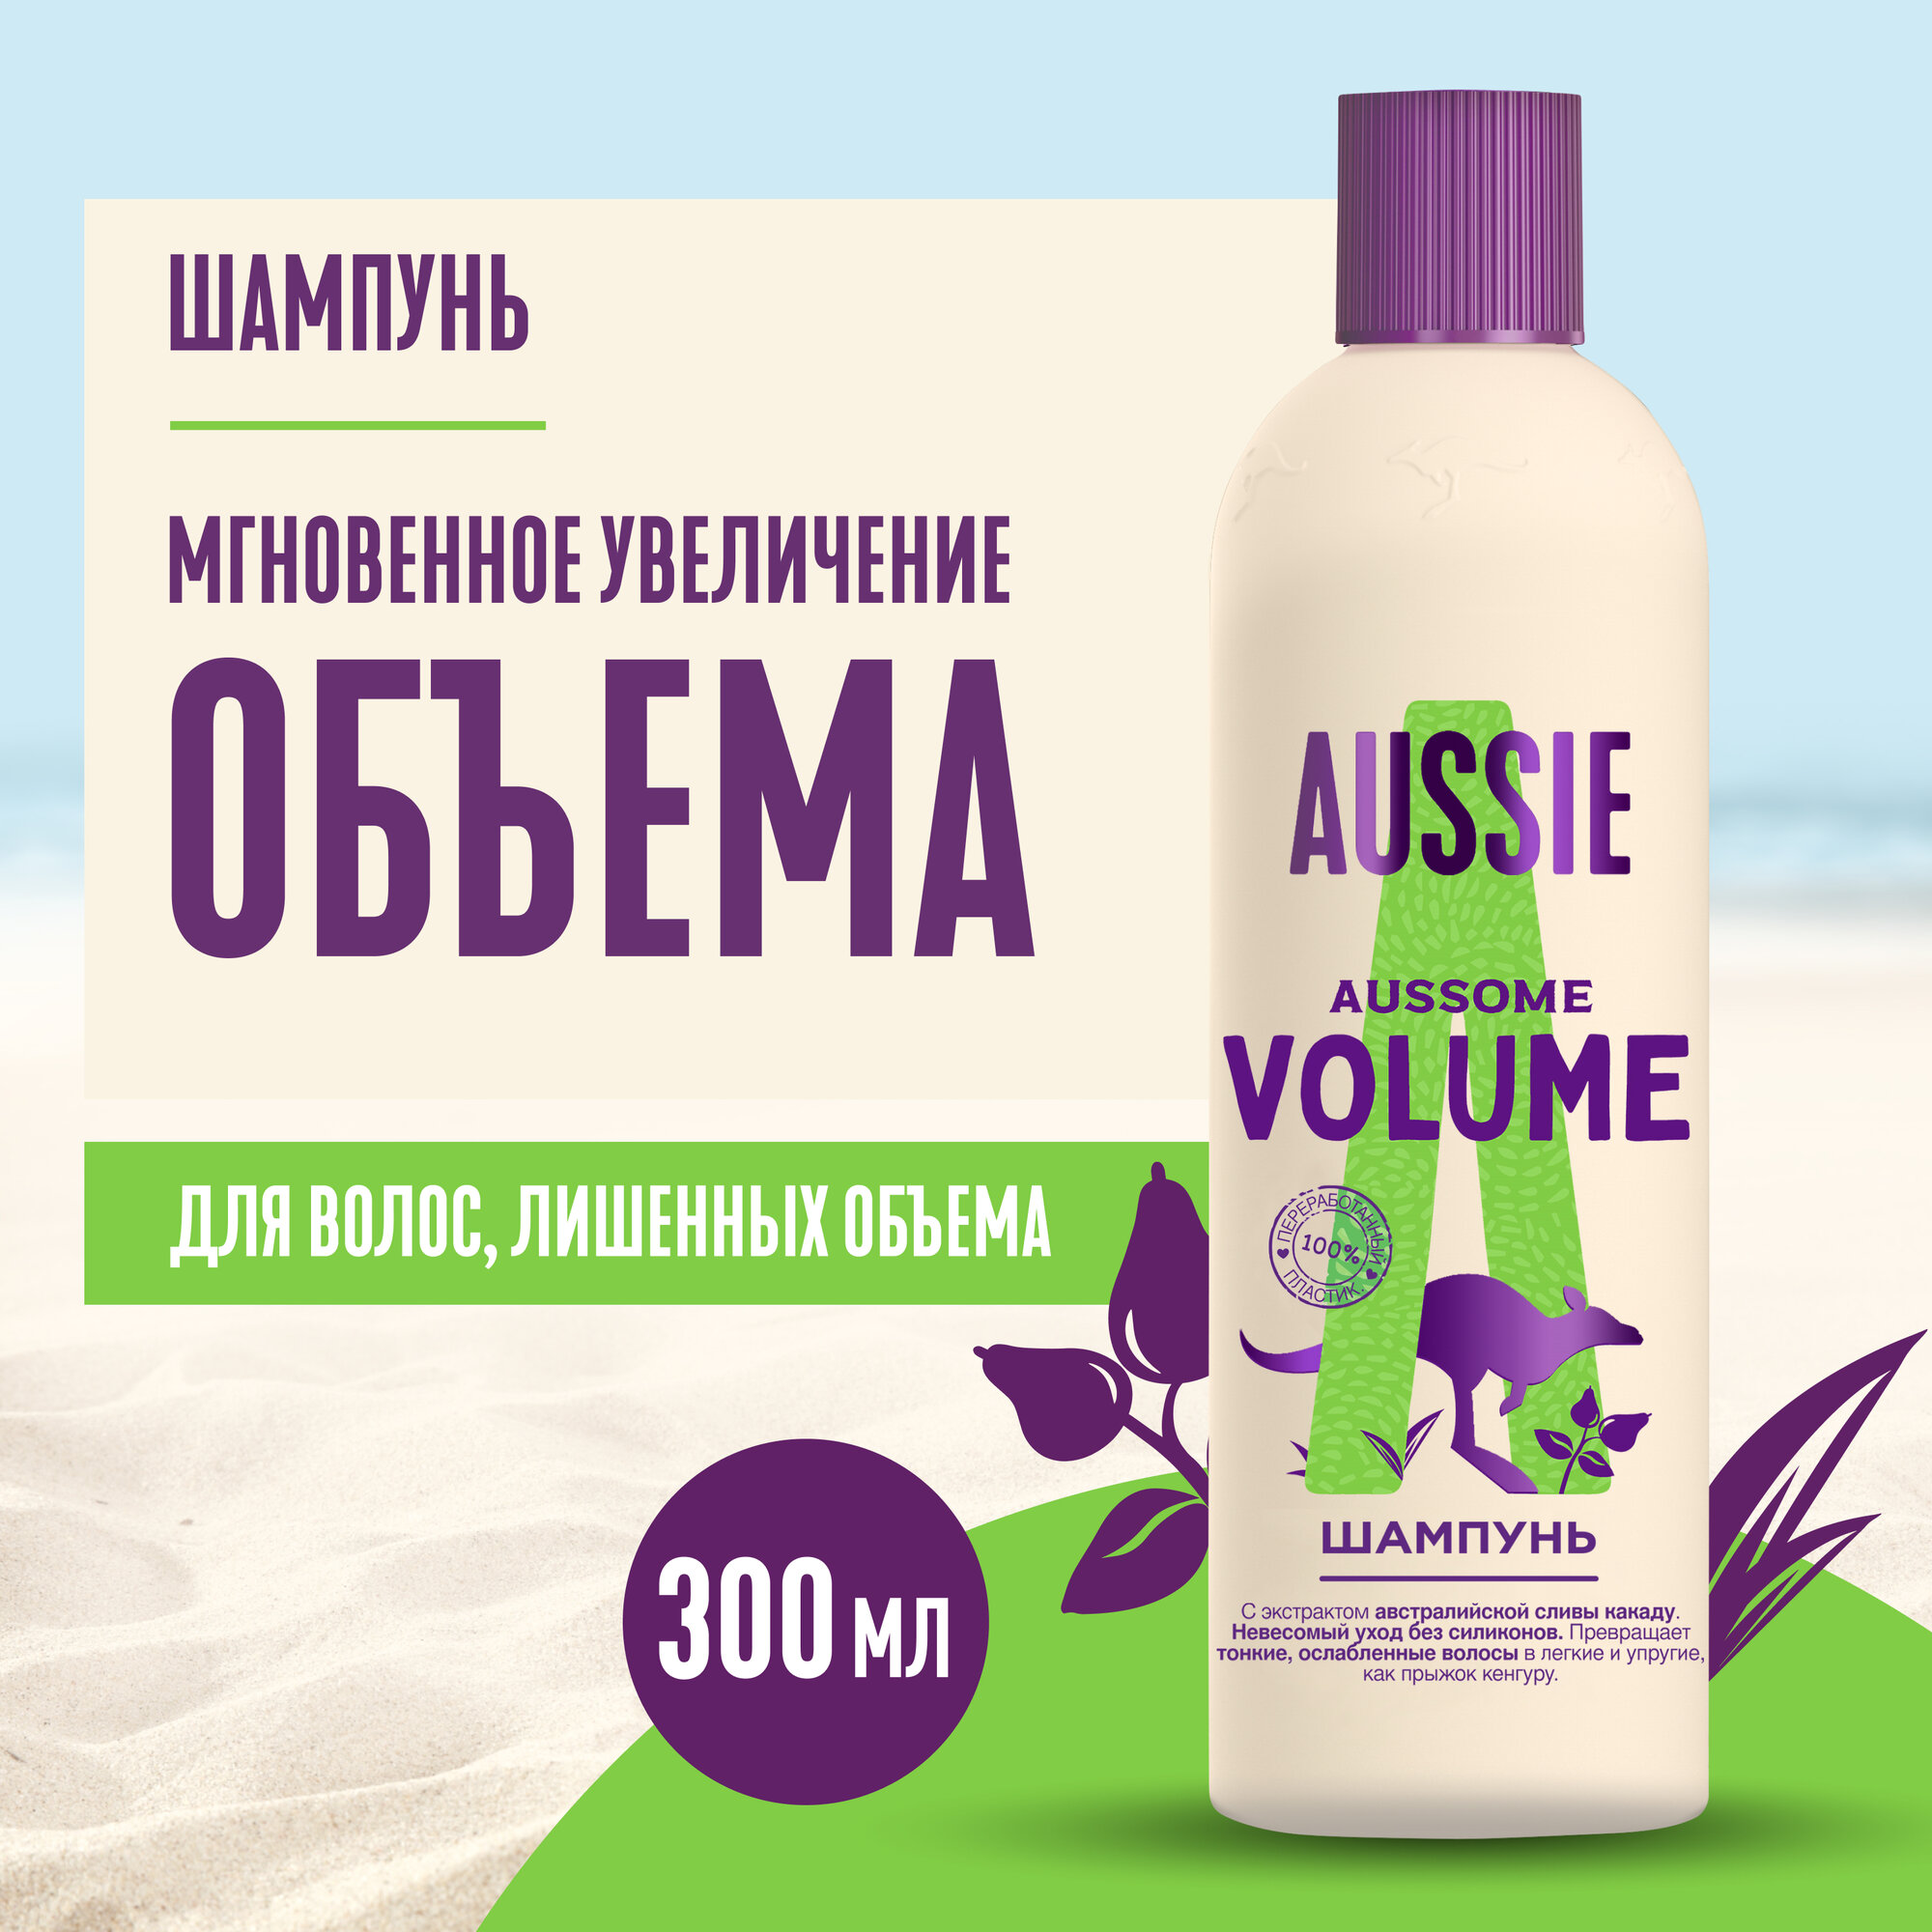 AUSSIE Шампунь Aussome Volume с австралийской сливой для объема волос, Осси, 300 мл, 